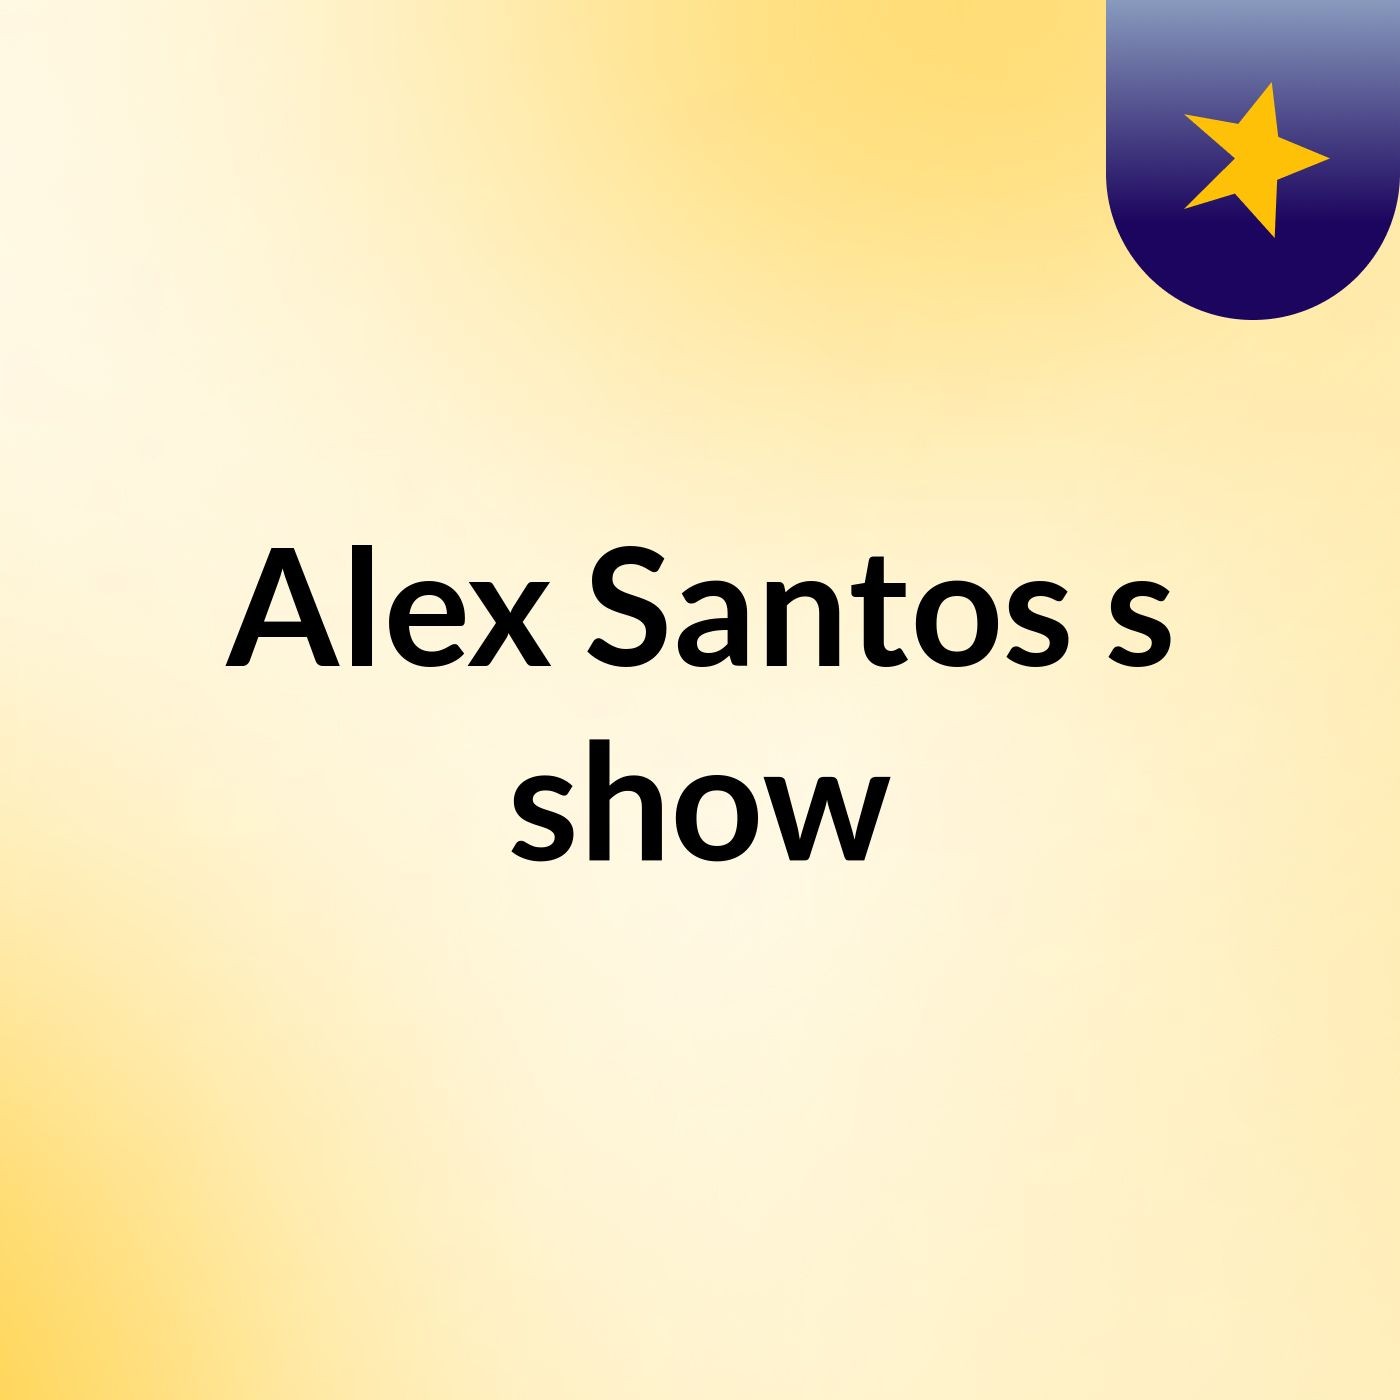 Alex Santos's show